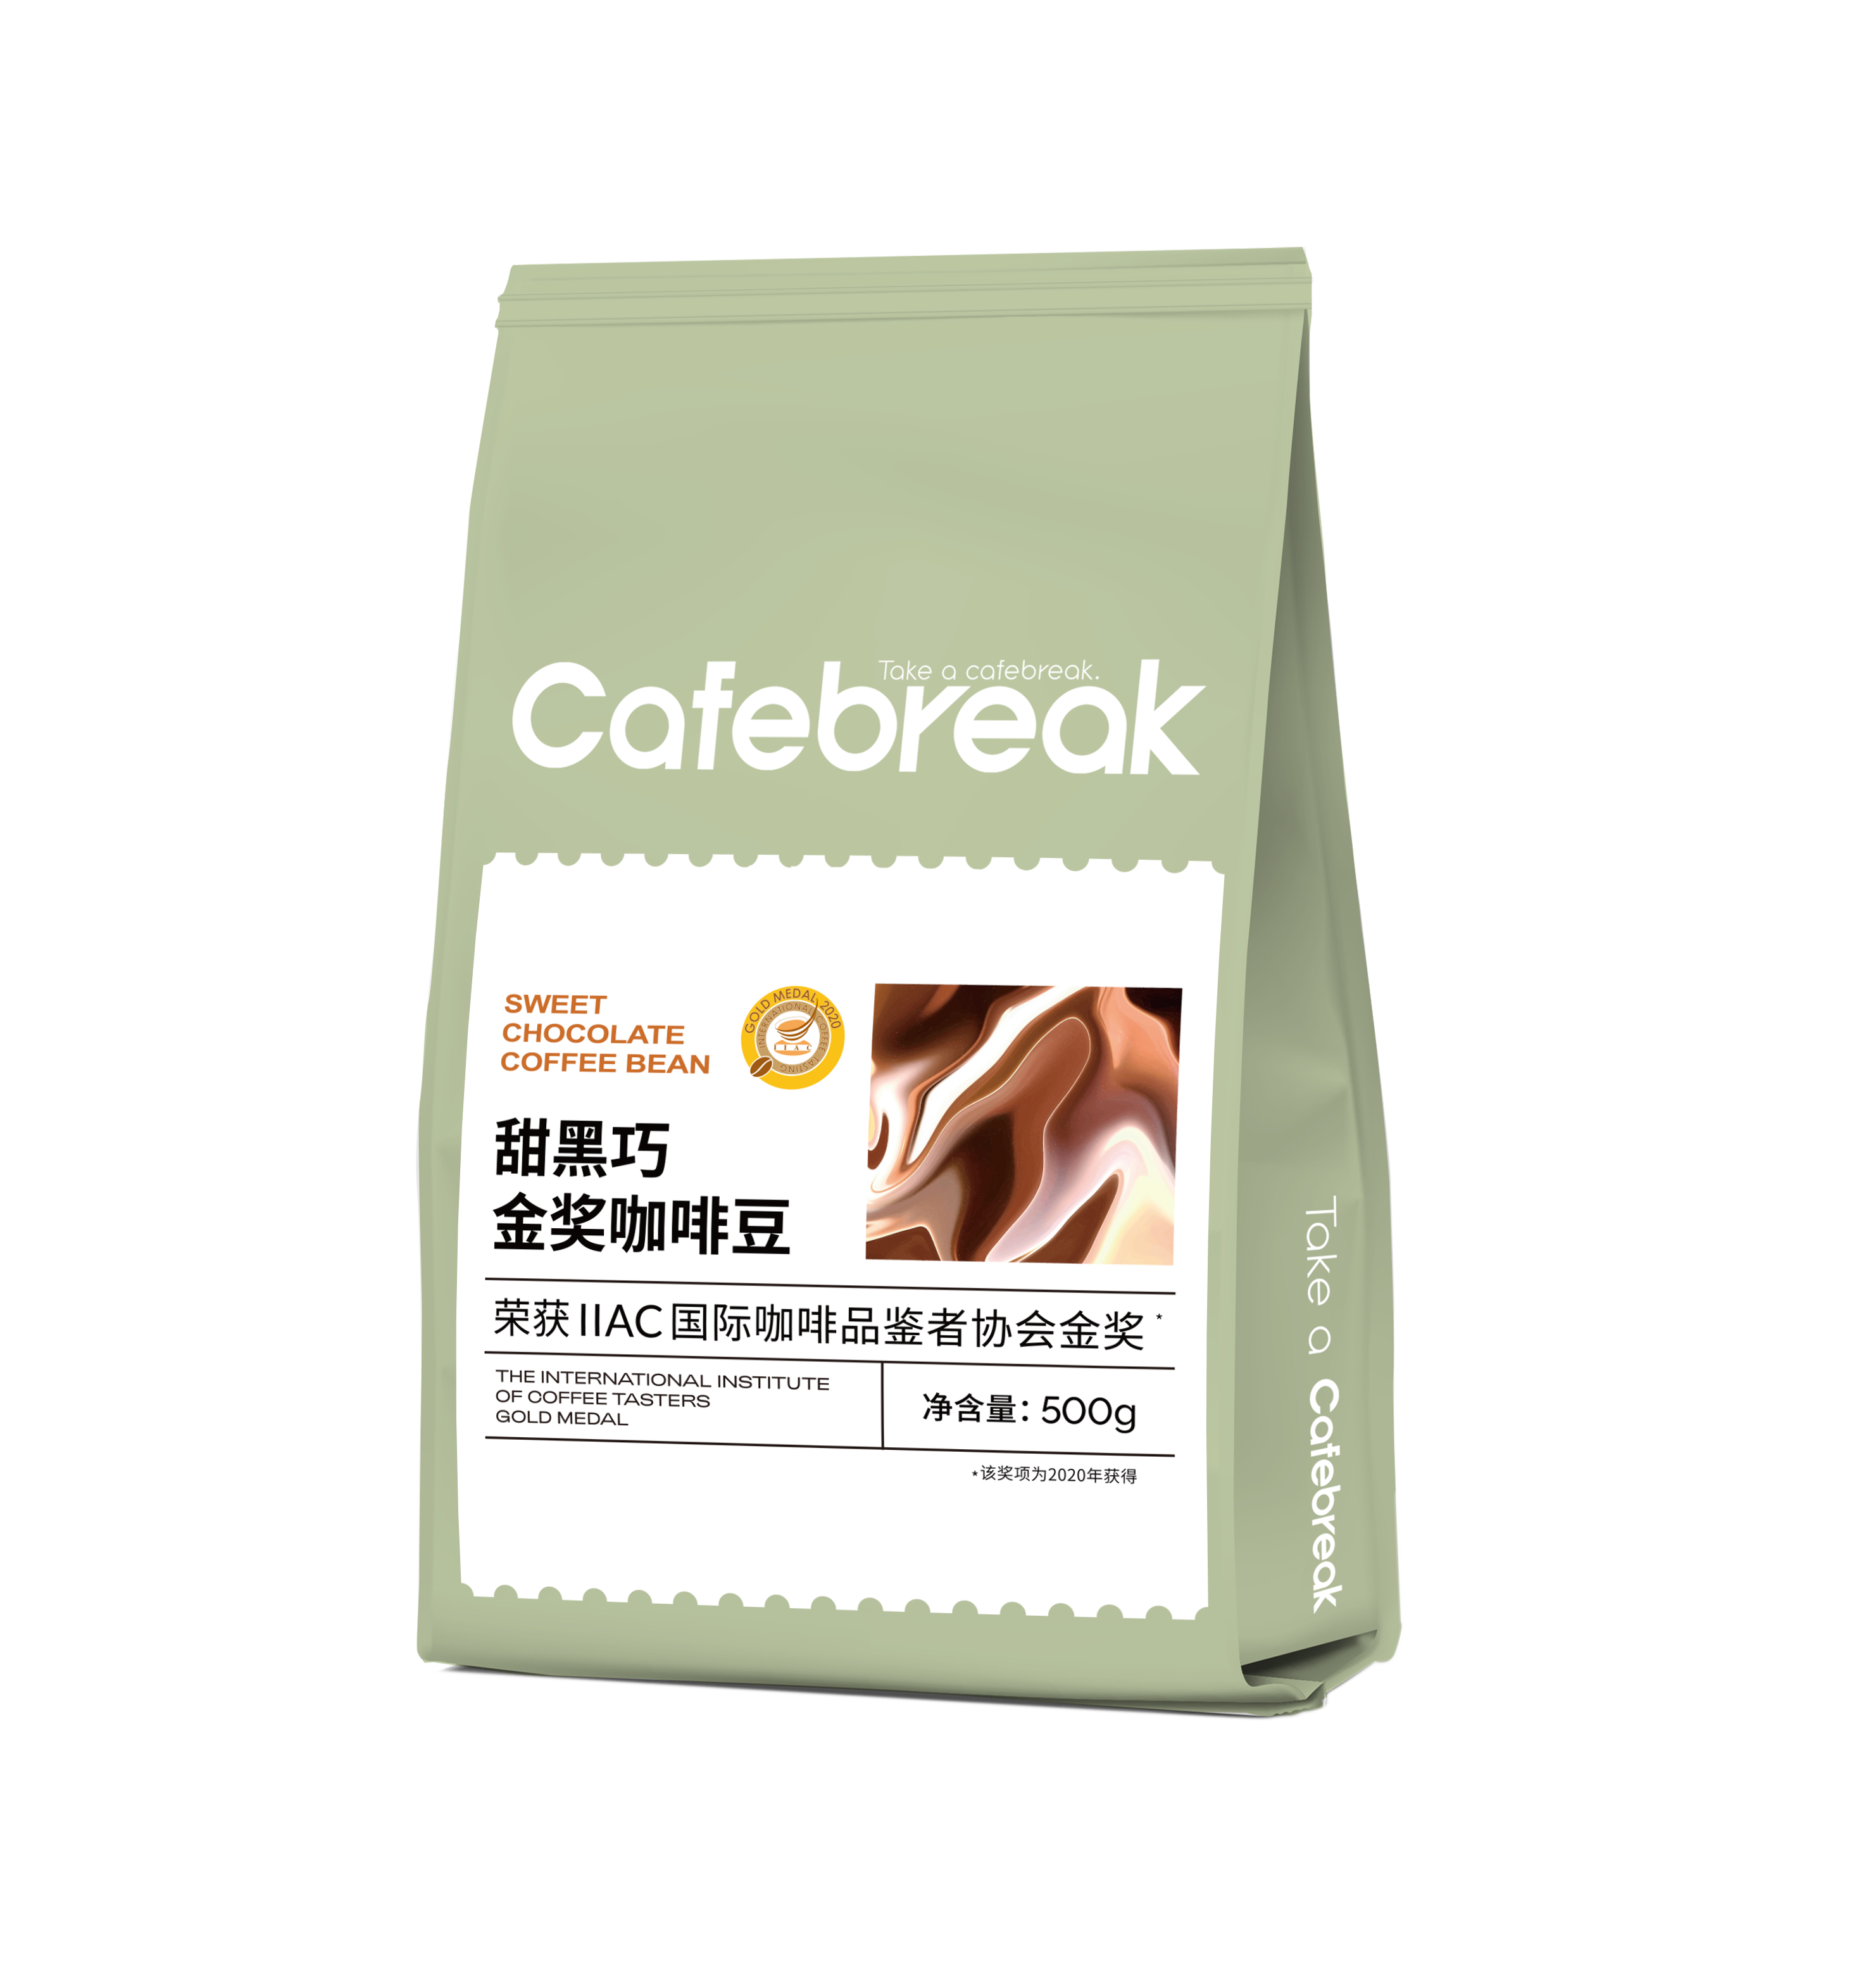 布蕾克cafebreak甜黑巧咖啡豆